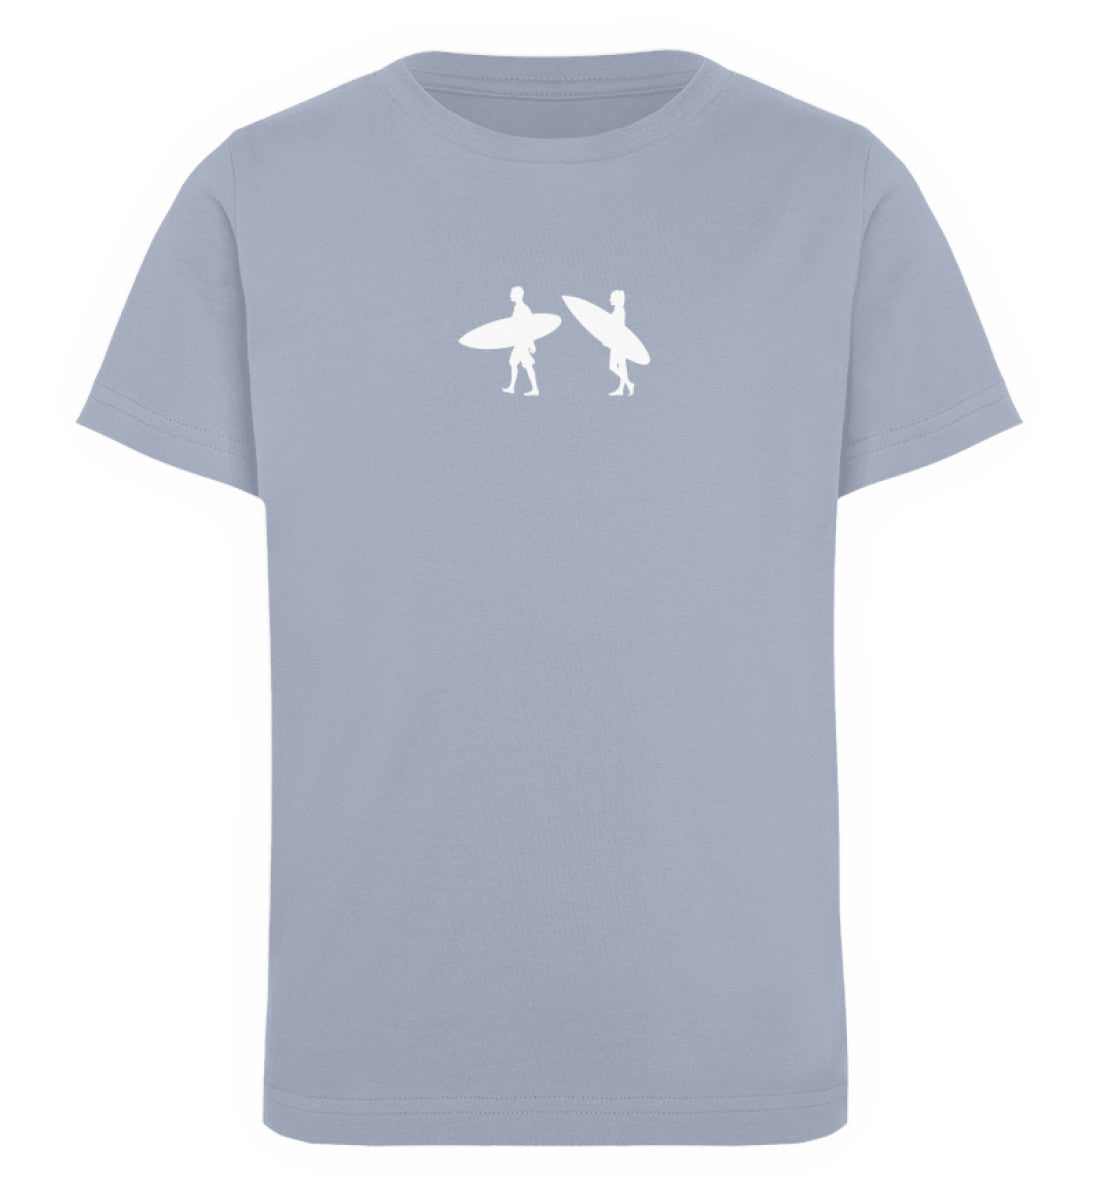 Serene Blue farbiges Kinder T-Shirt für Mädchen und Jungen bedruckt mit dem Design der Roger Rockawoo Kollektion Tiny Surfer